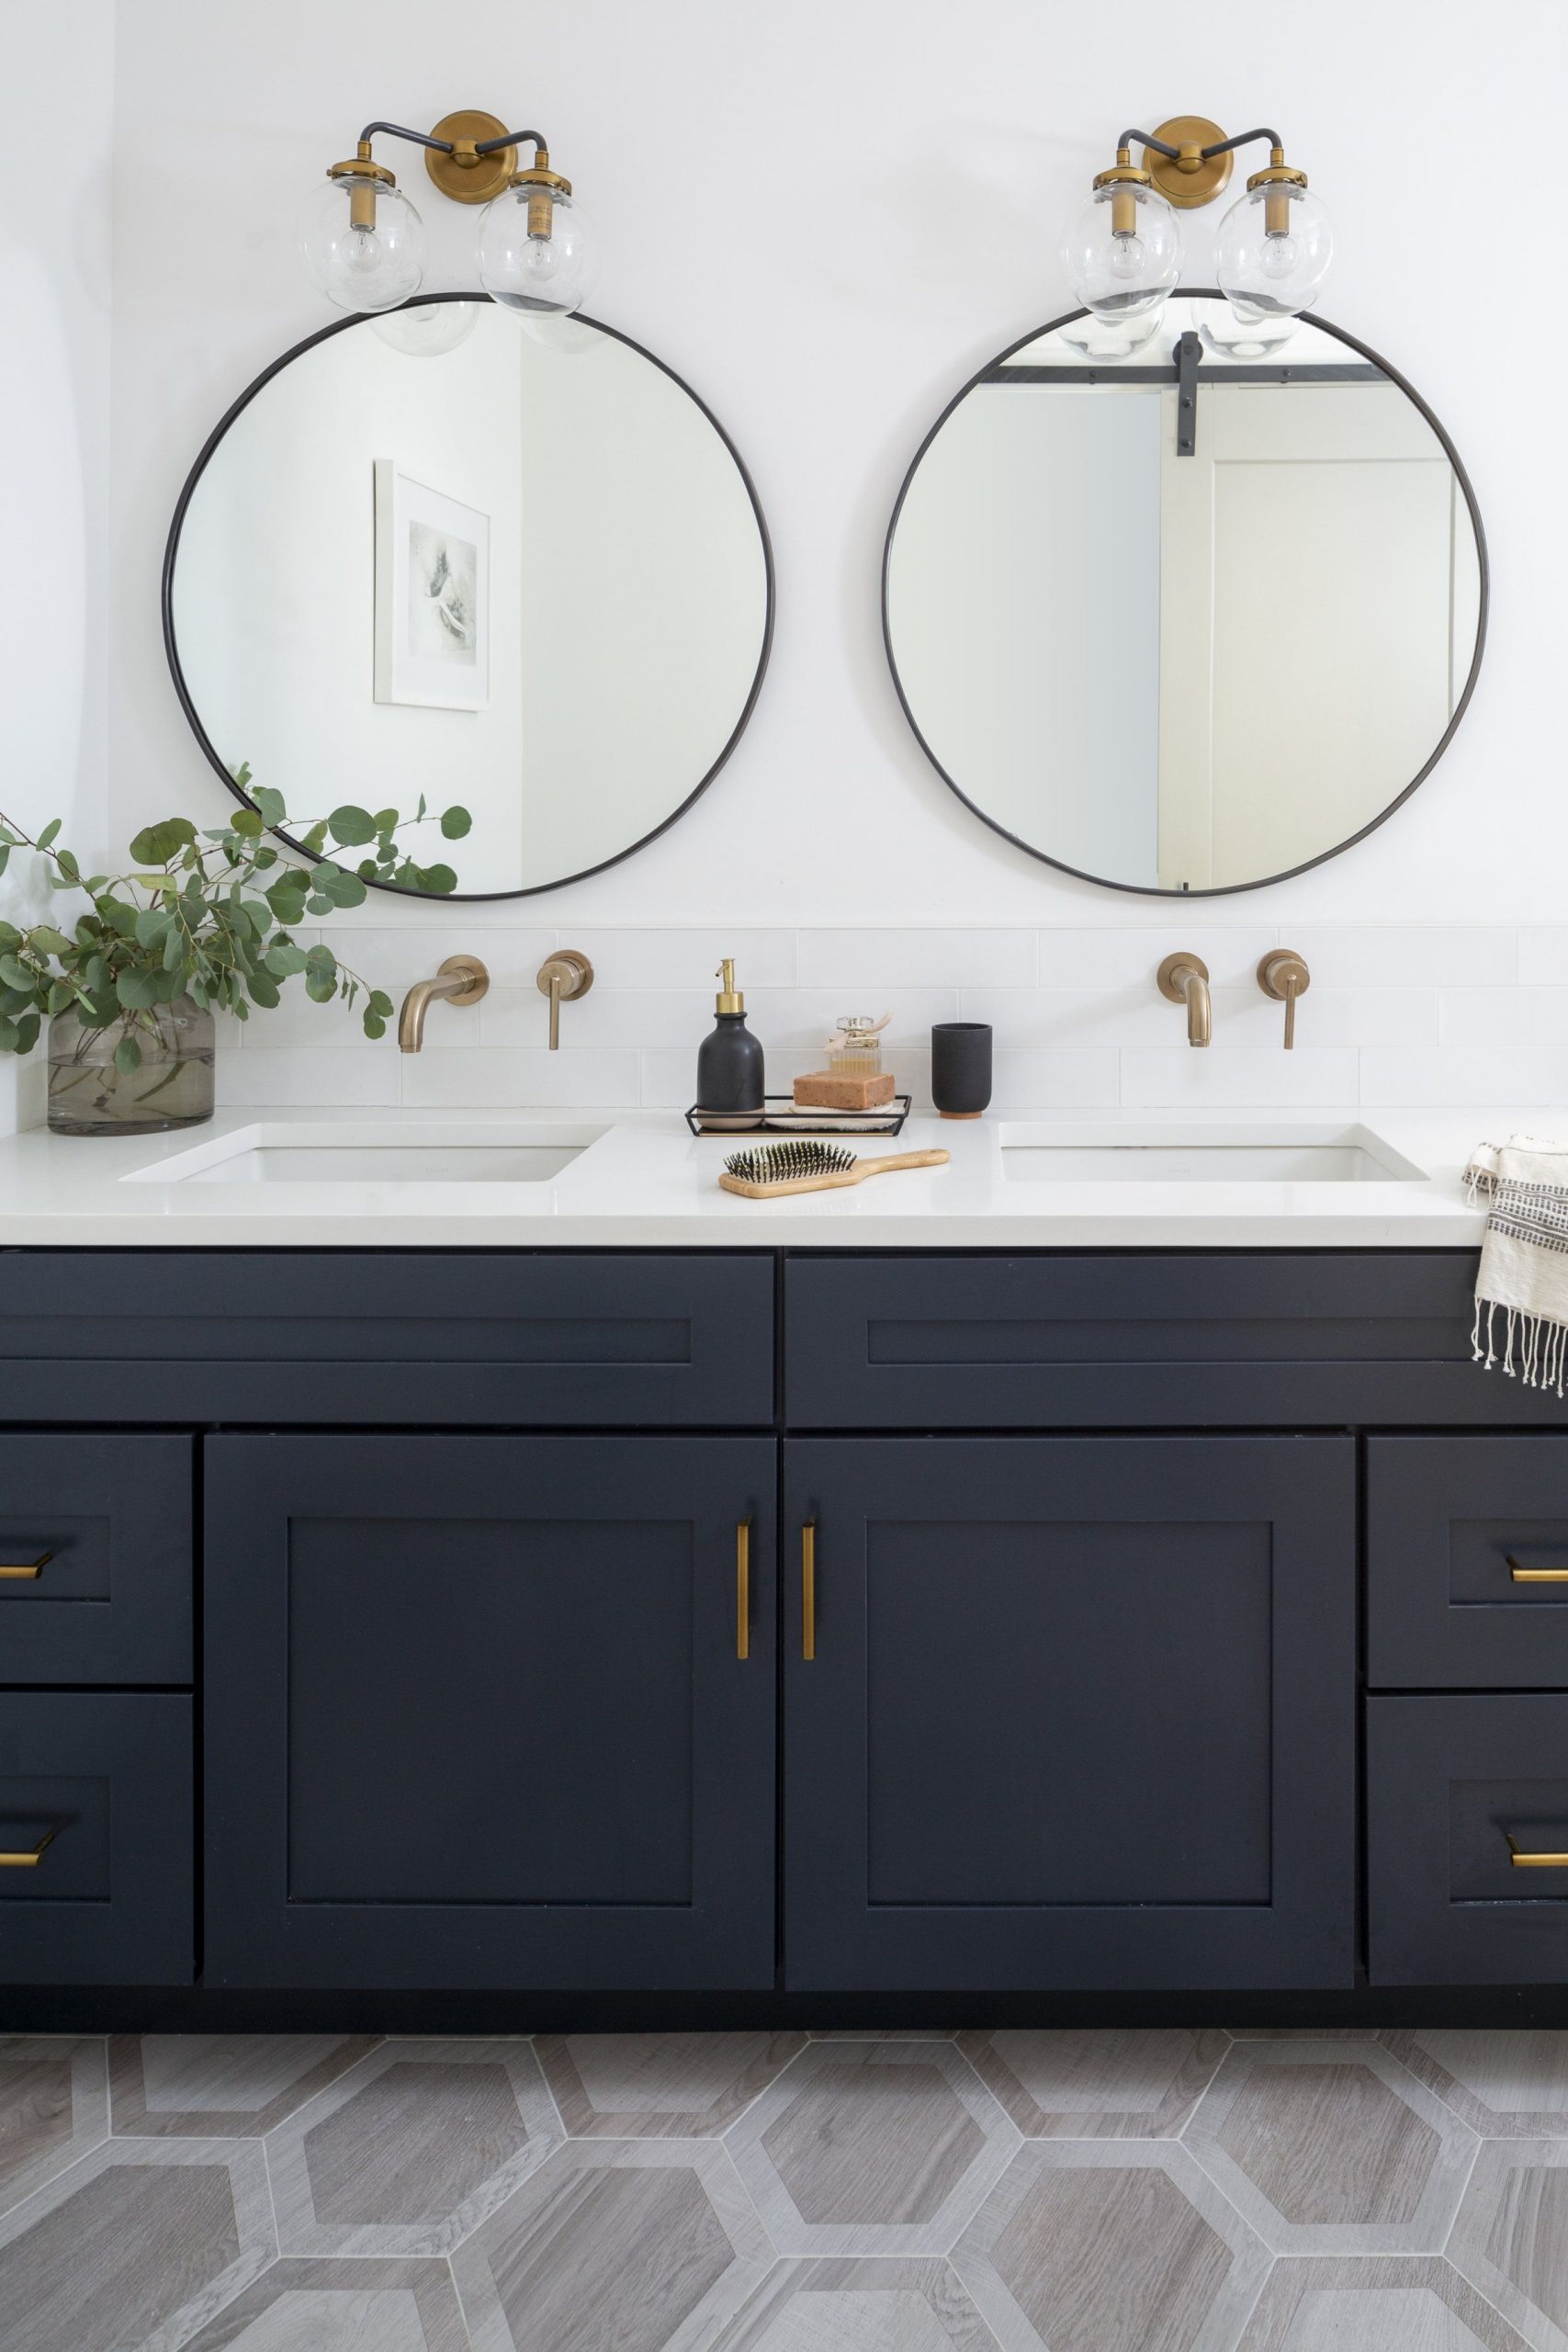 5 Most Popularity Double Sink Bathroom Vanity Ideas – Vankkids.com